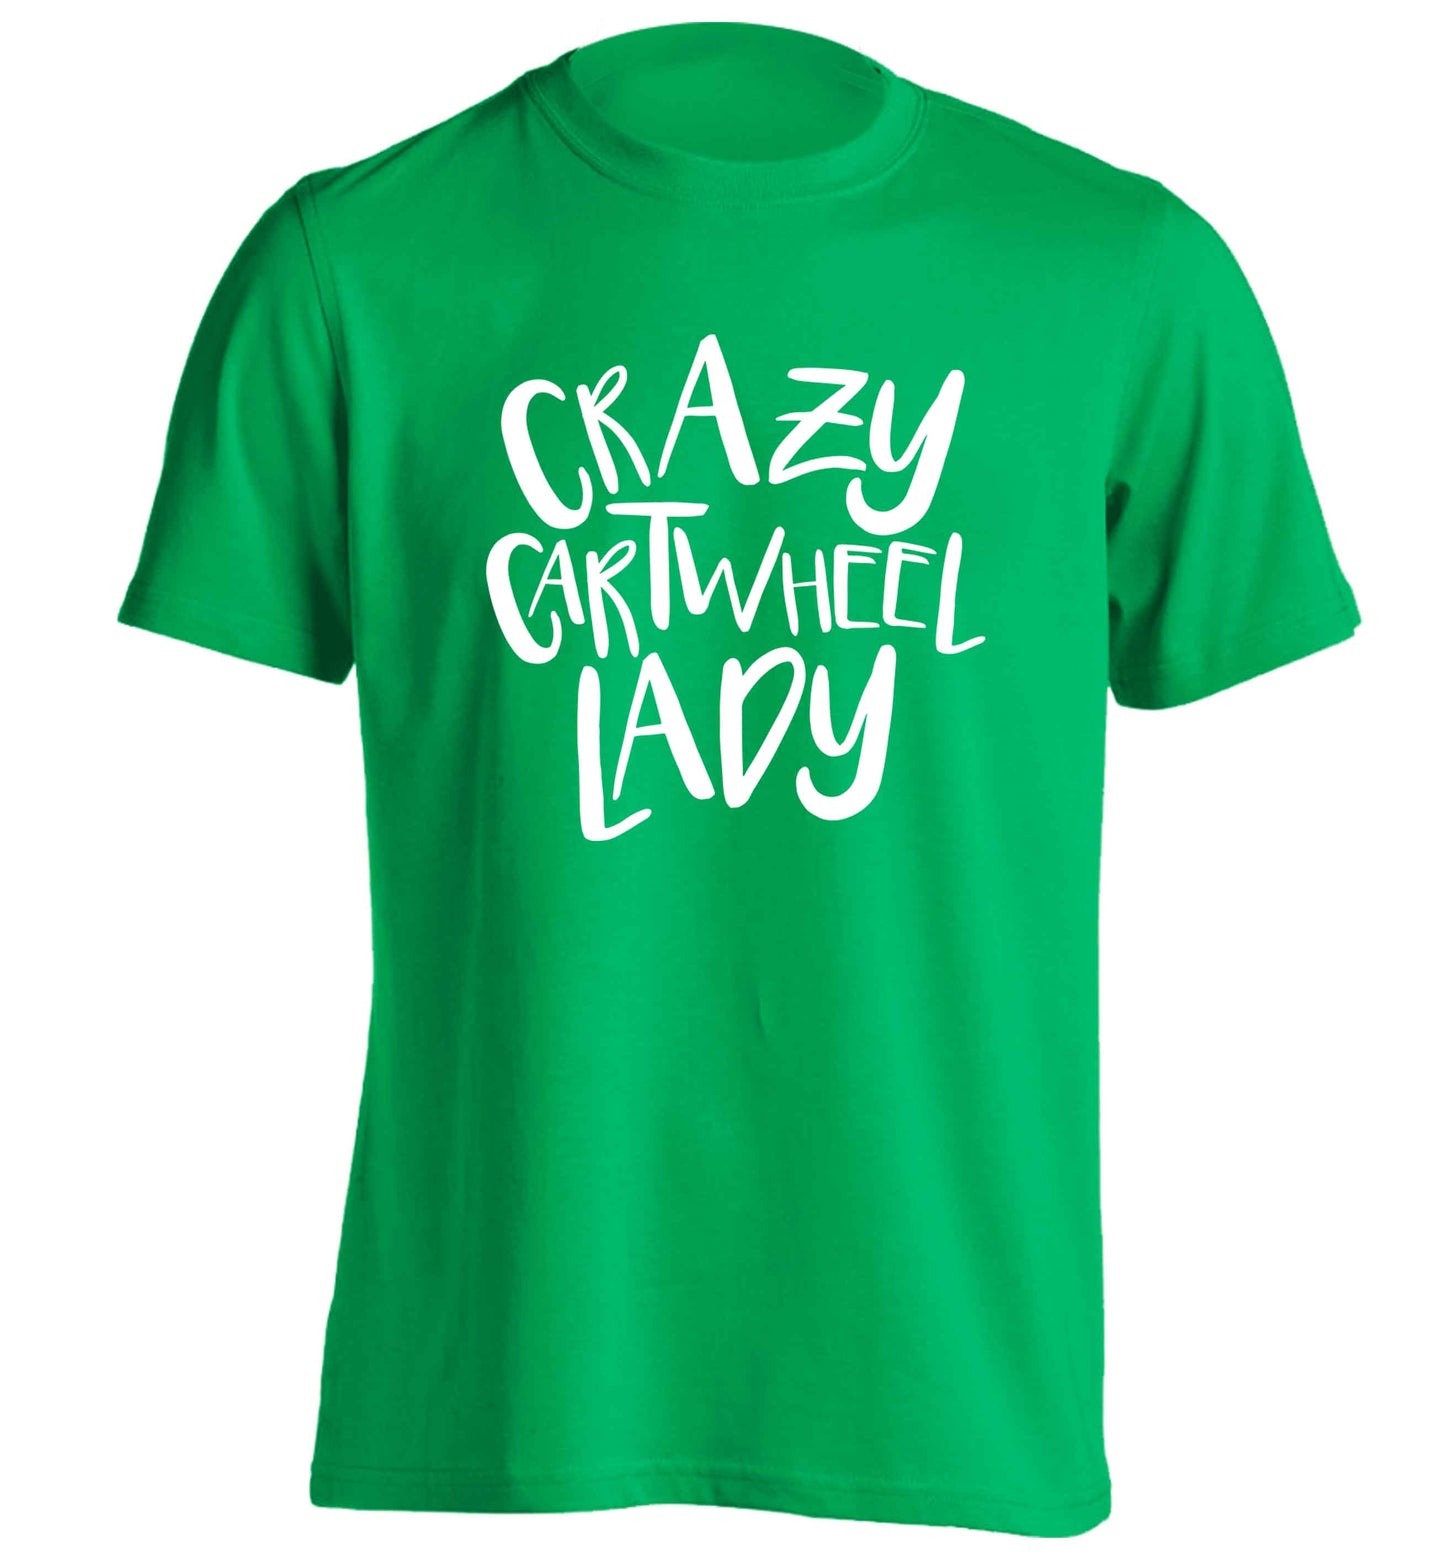 Crazy cartwheel lady adults unisex green Tshirt 2XL